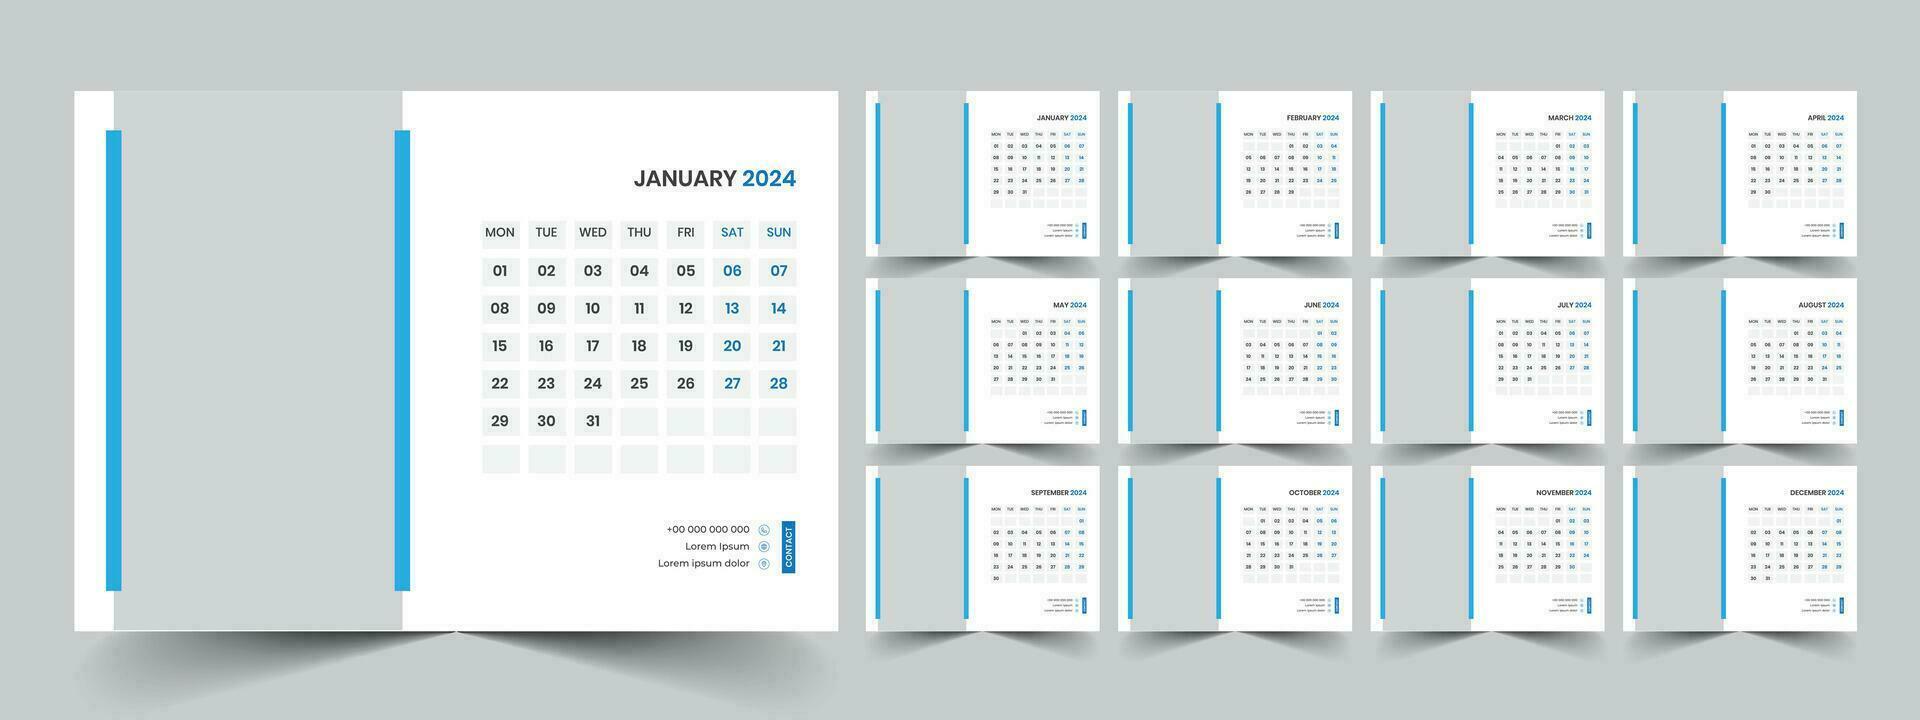 calendario 2024 planificador corporativo modelo diseño colocar. semana empieza en lunes. modelo para anual calendario 2024 vector